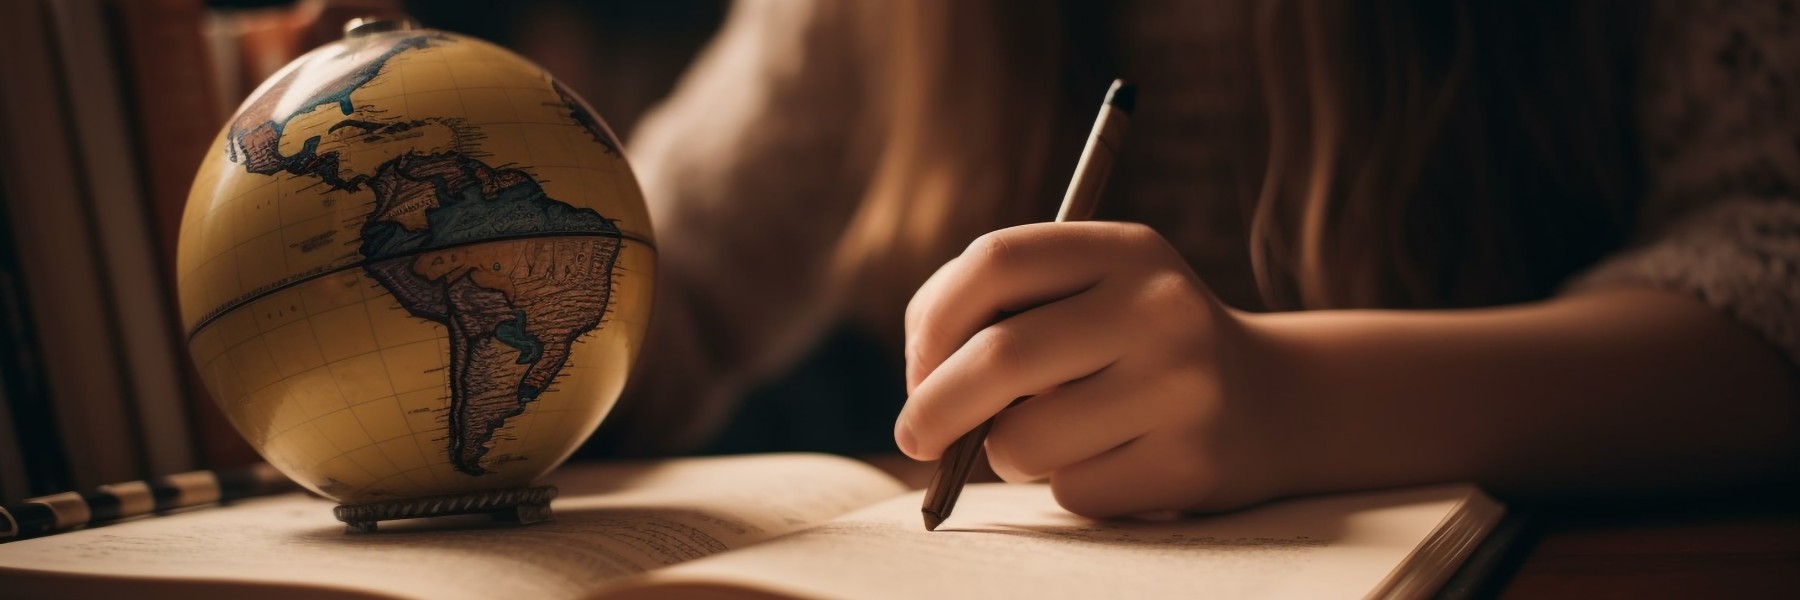 Dłoń pisząca piórem w zeszycie, globus przytrzymujący zeszyt